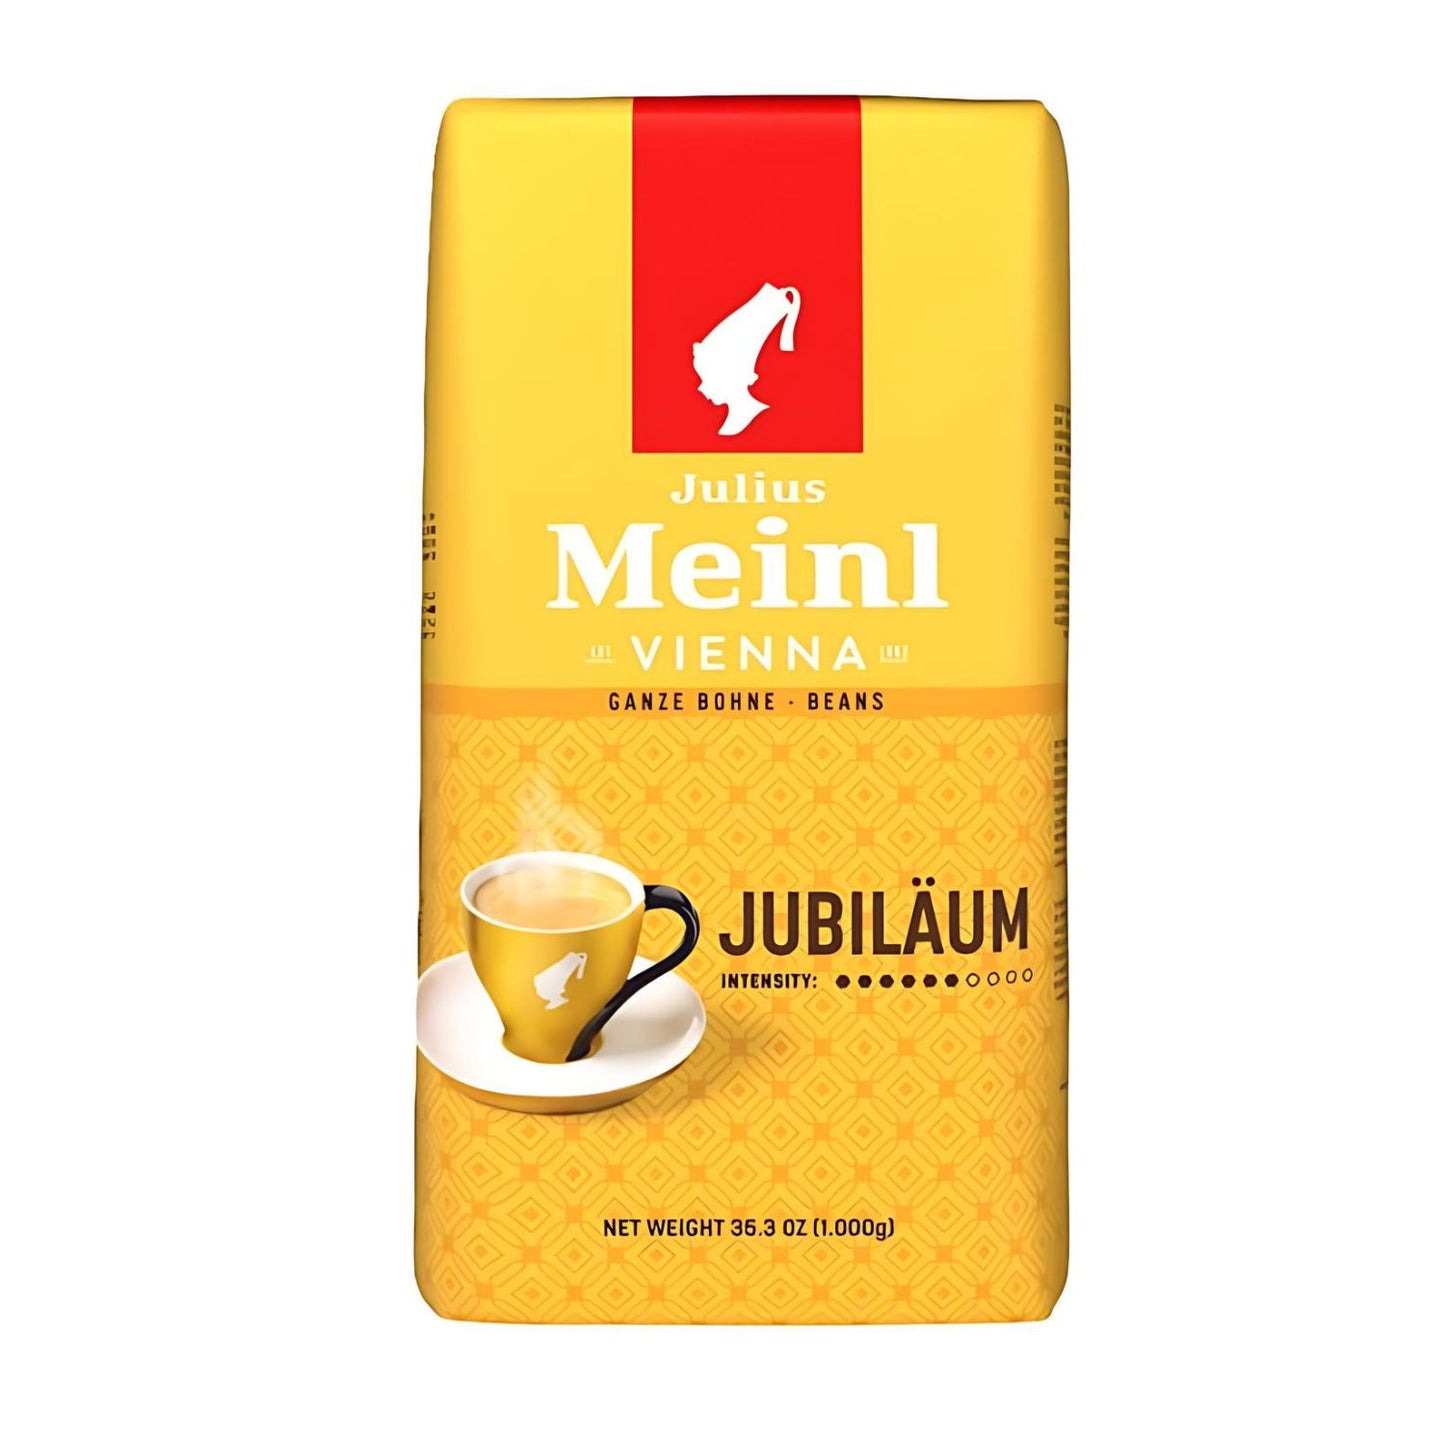 Julius Meinl Jubilaum Whole Bean Coffee 17.6oz/500g